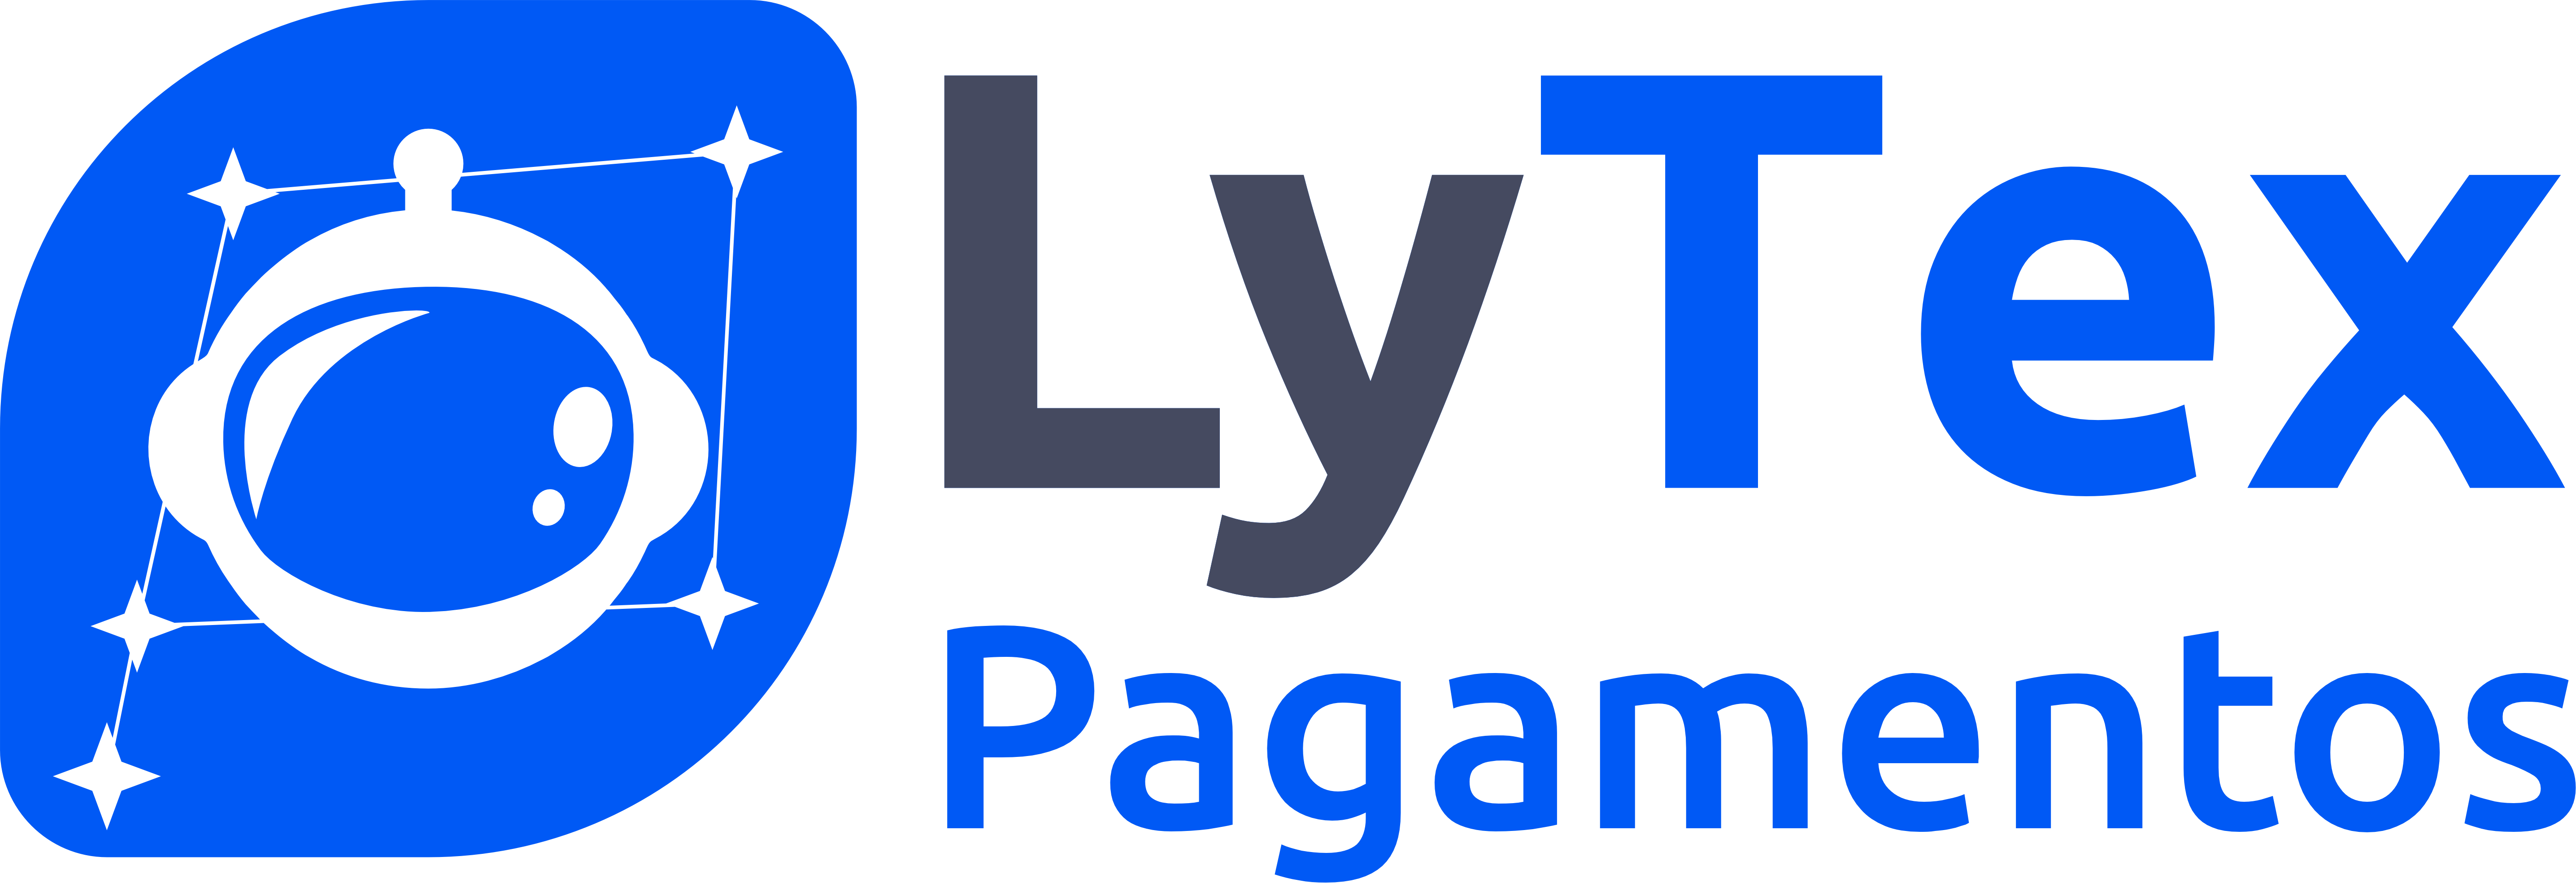 Lytex-logo colorida